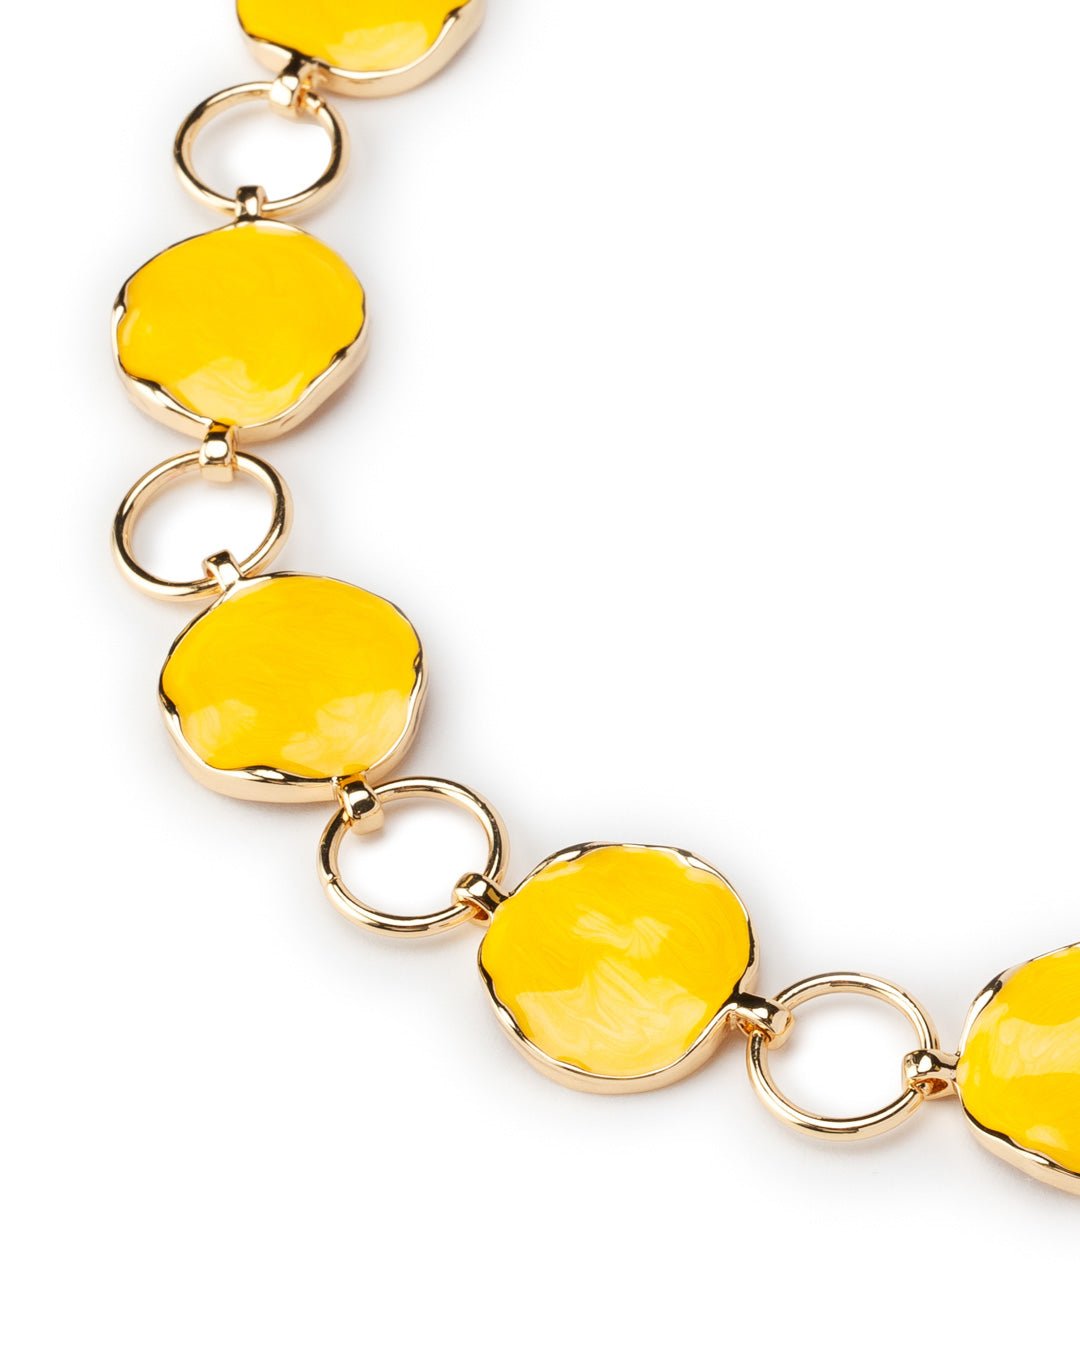 Collana girocollo in metallo con sfere schiacciate smaltate gialle - Mya Accessories